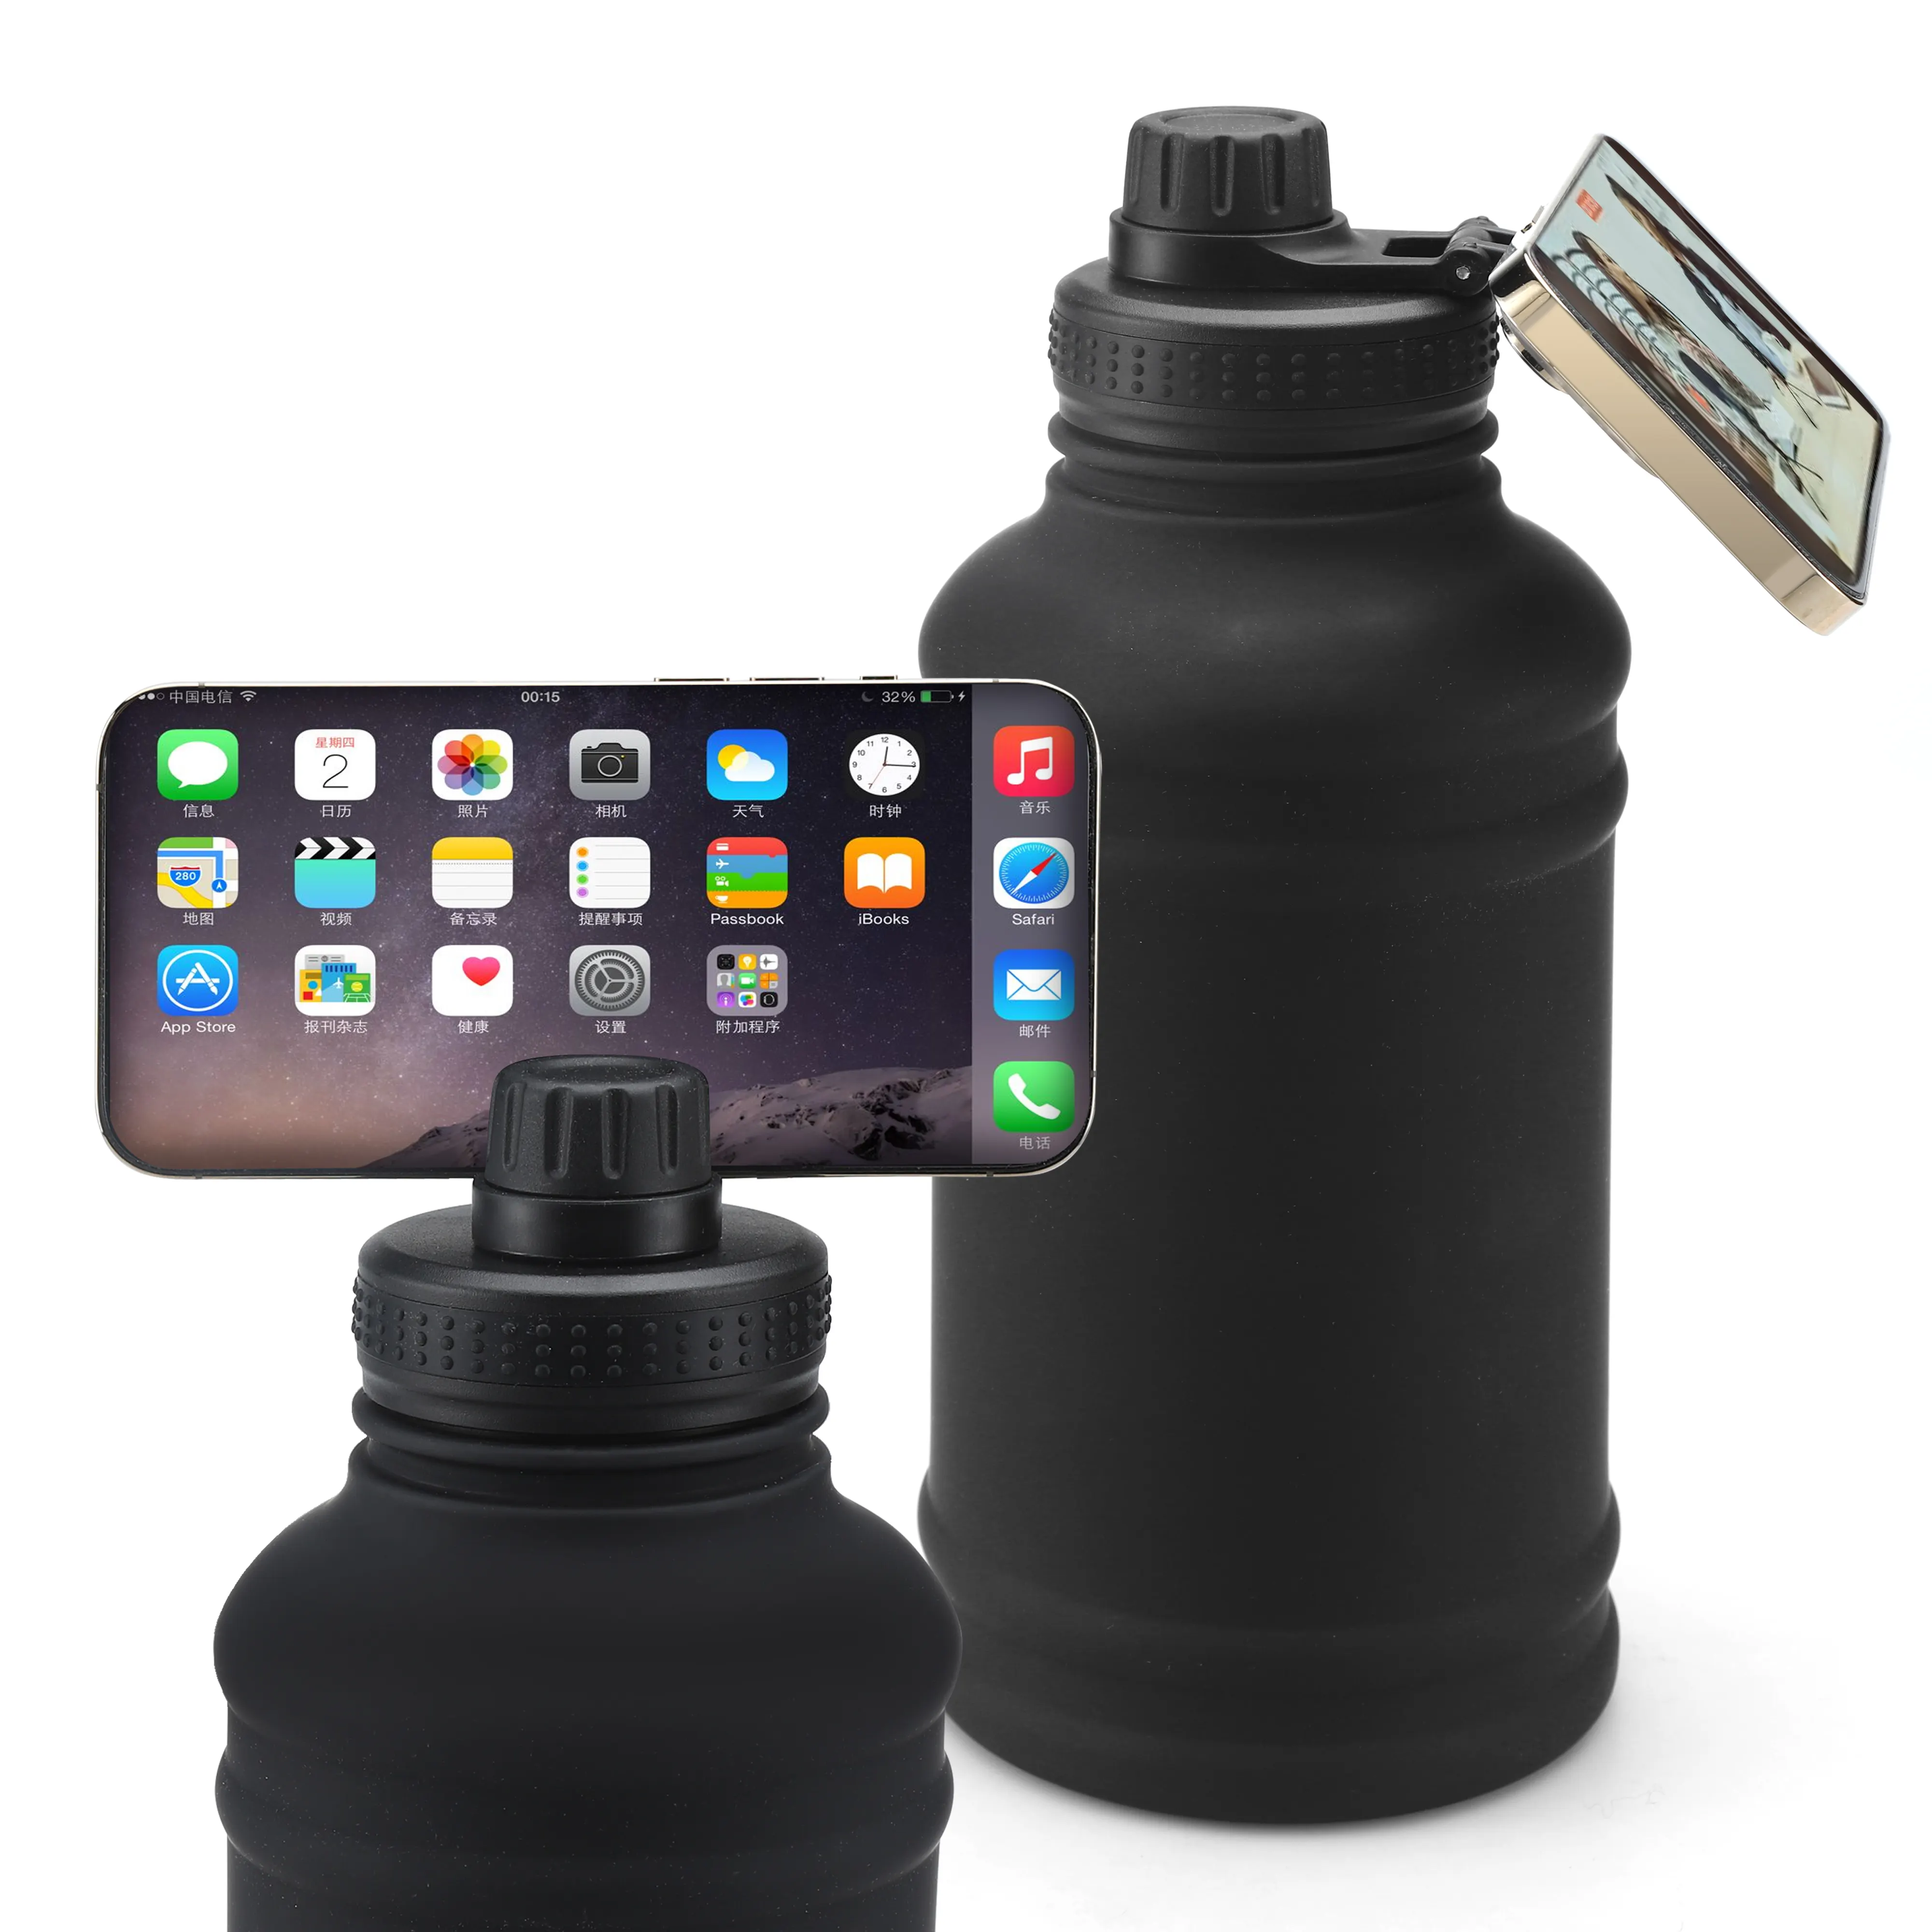 Tapa magnética para teléfono, botella de agua de acero inoxidable, atracción magnética para su teléfono móvil, se adapta a múltiples capacidades